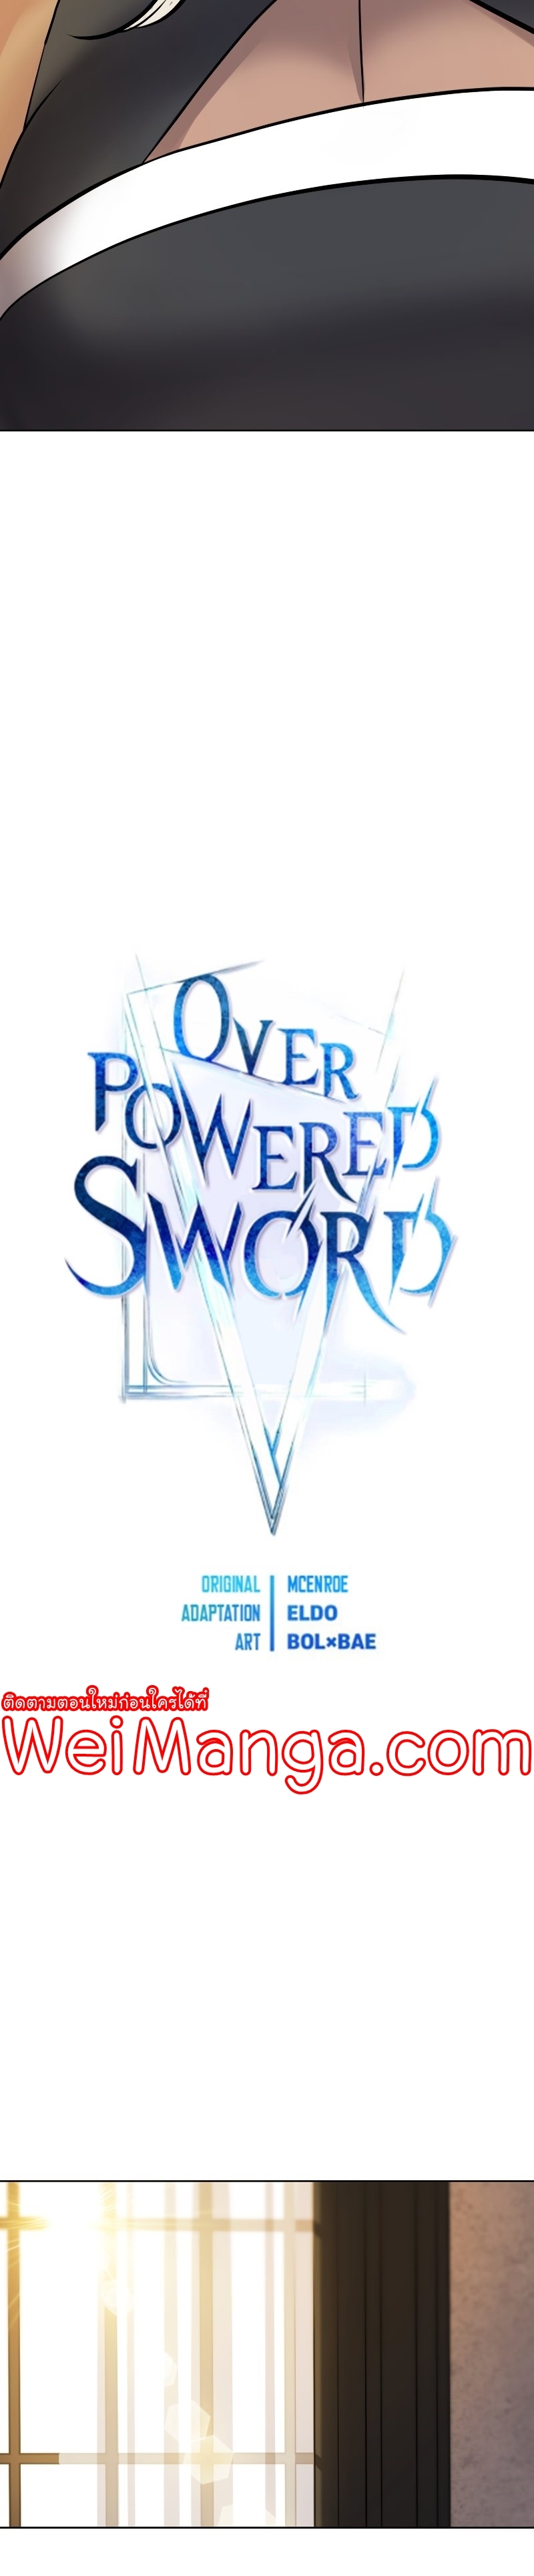 Overpowered Sword44 (3)